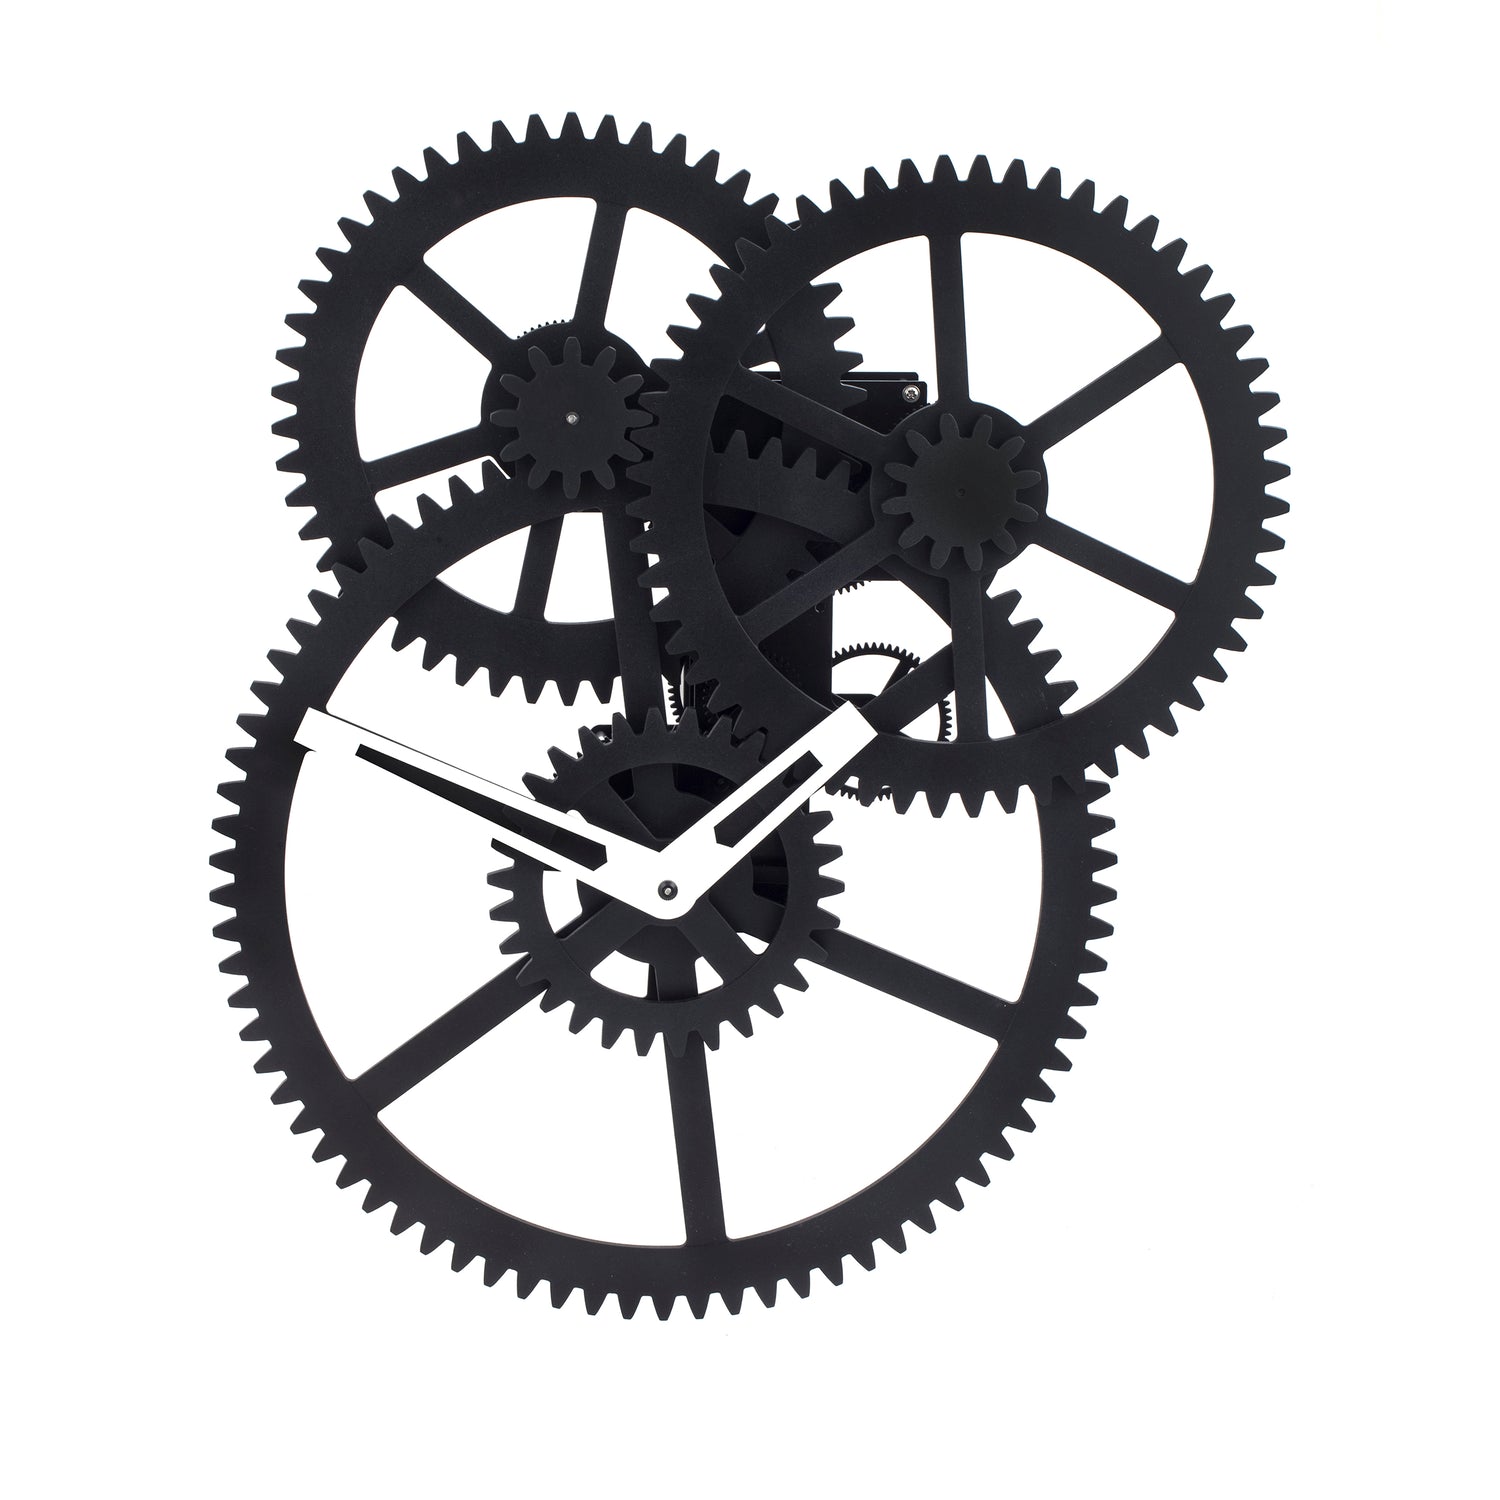 Big Wheel Hour Gear Clock